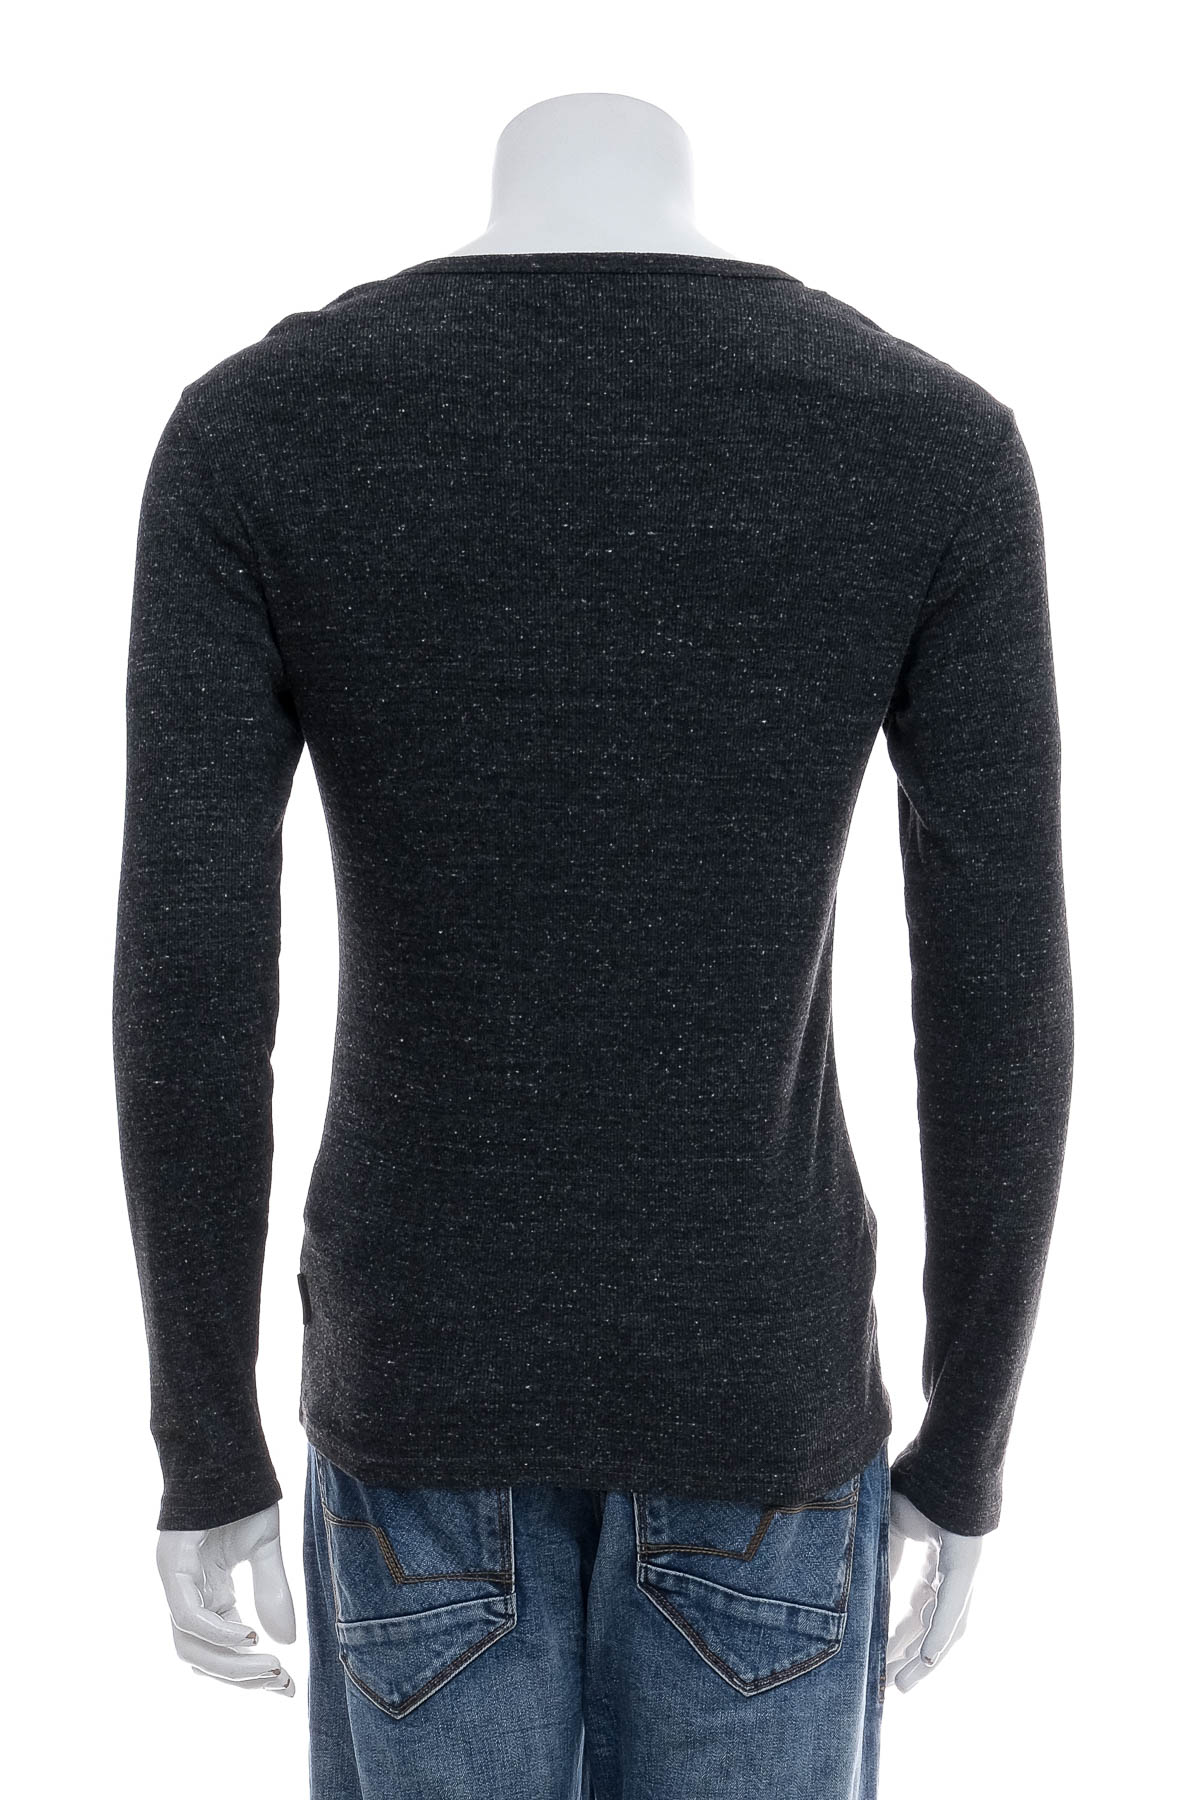 Men's sweater - YOURTURN - 1